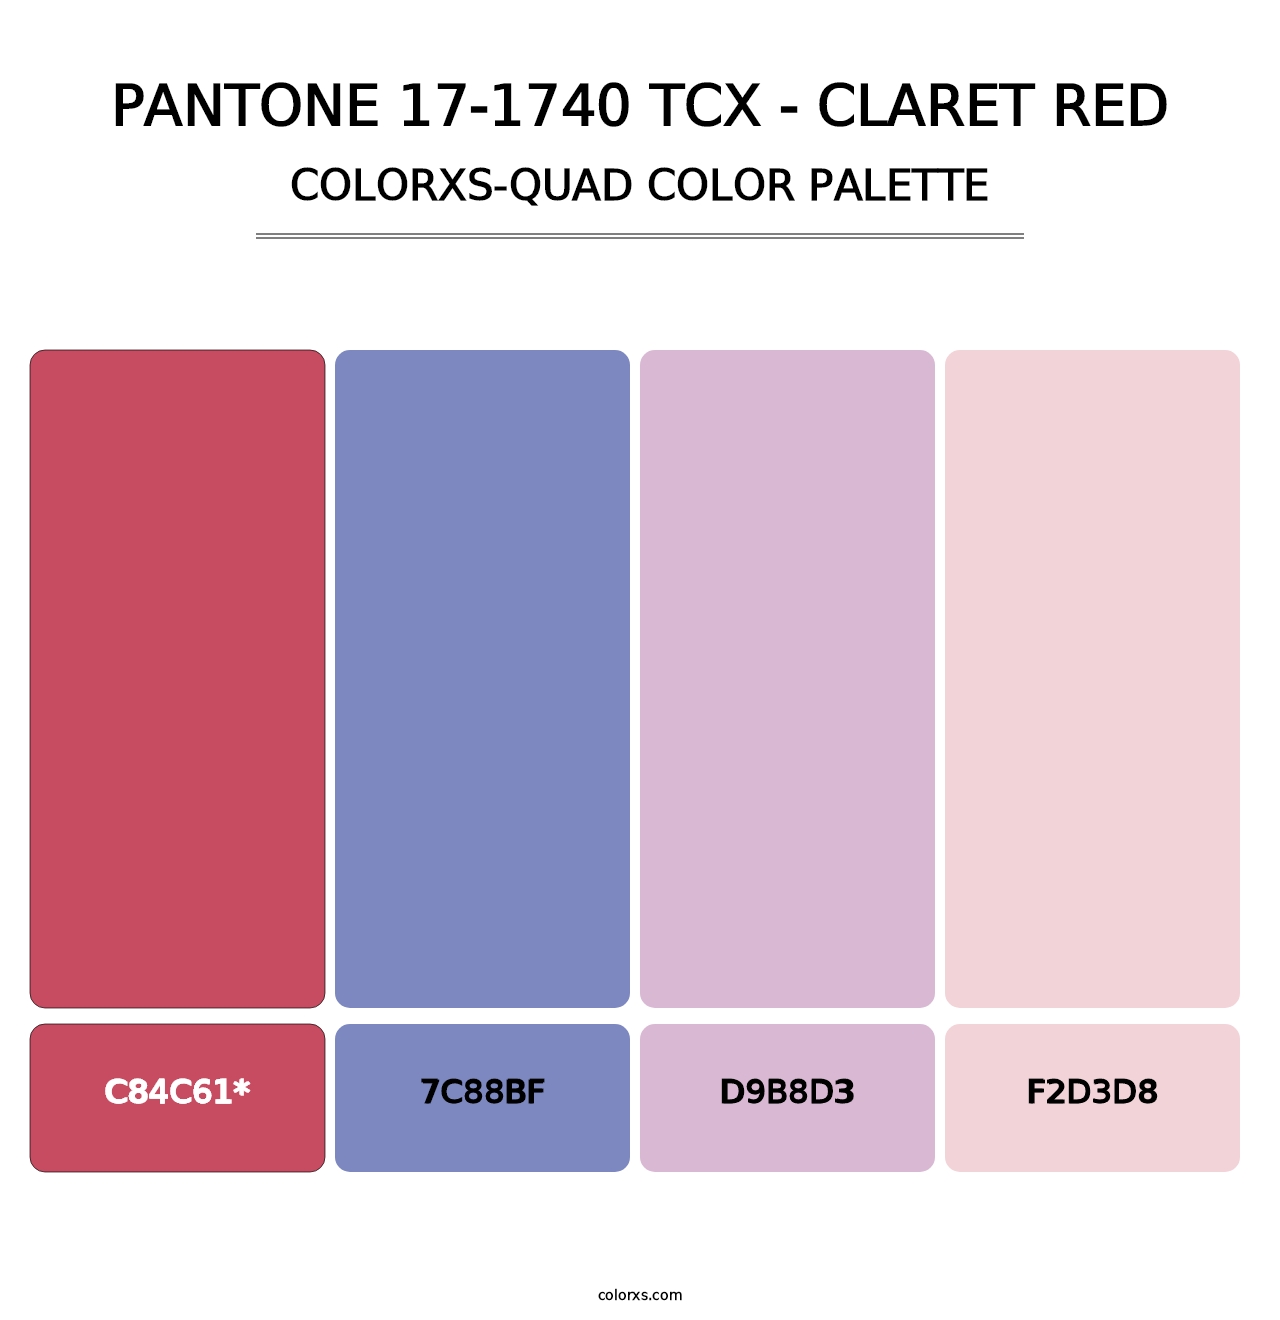 PANTONE 17-1740 TCX - Claret Red - Colorxs Quad Palette